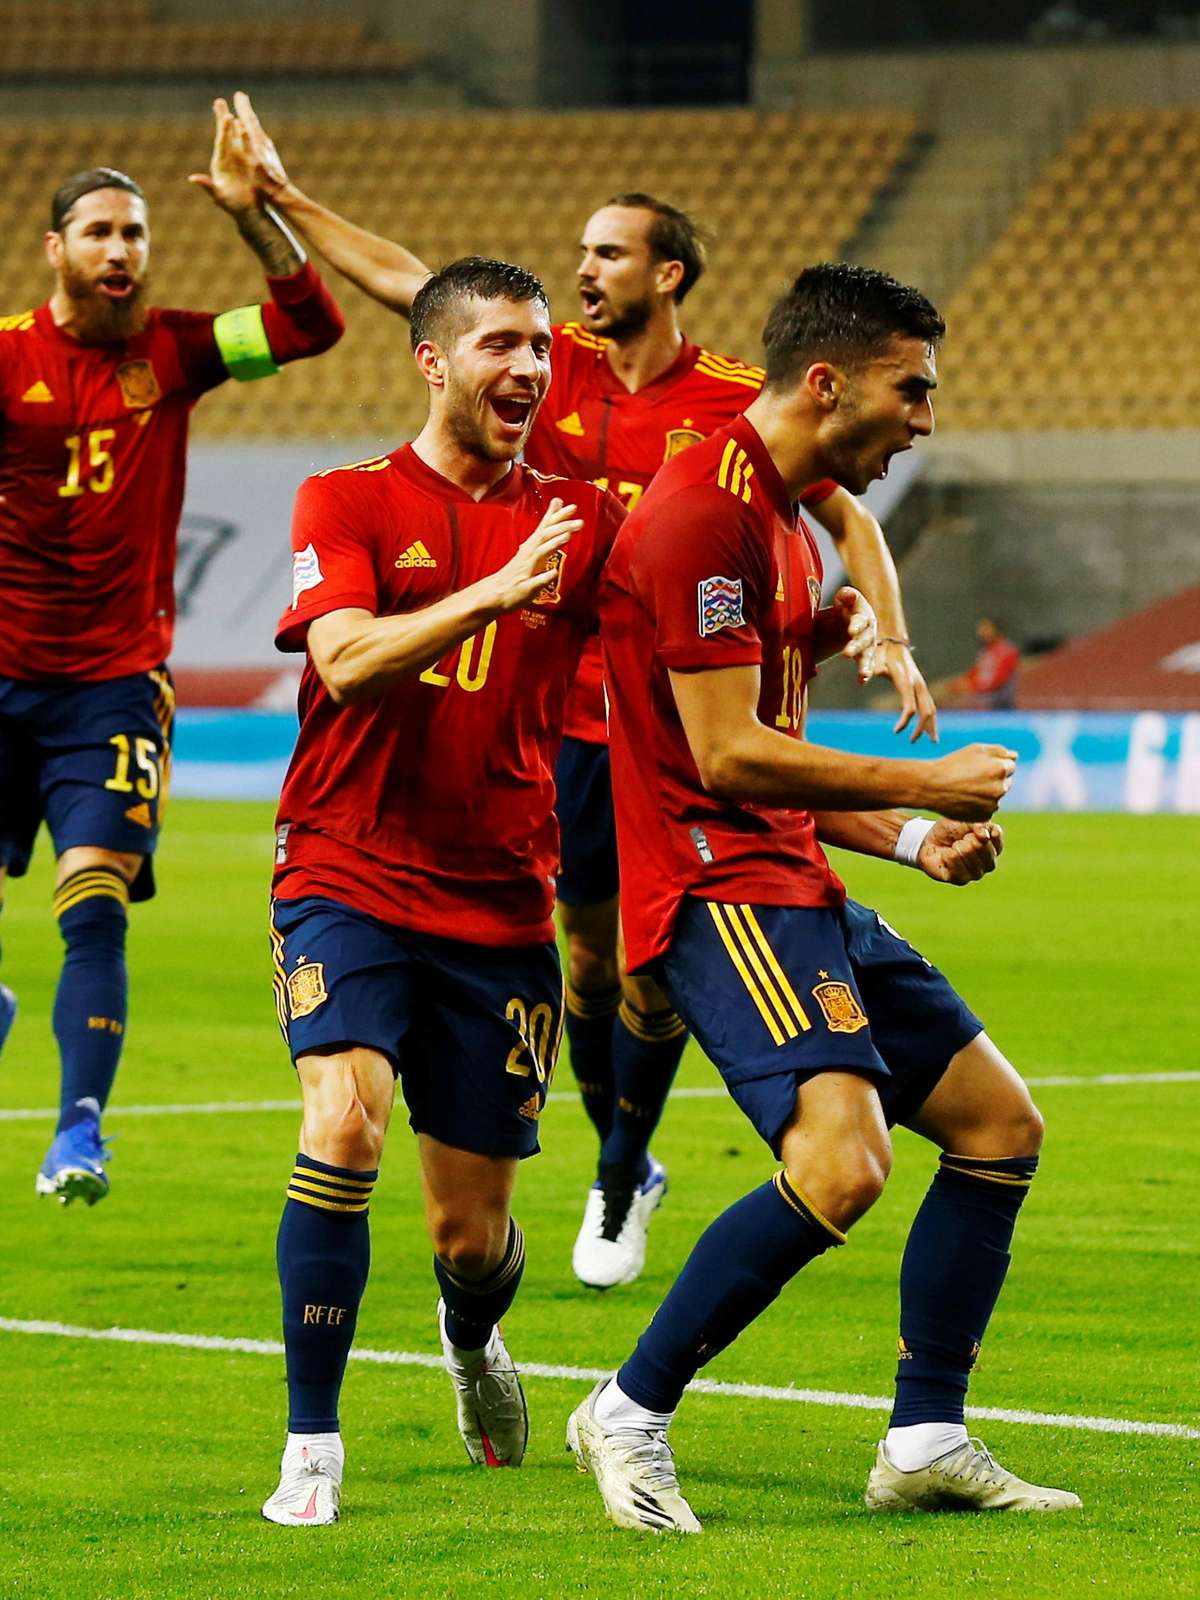 Espanha 6 x 0 Alemanha  Liga das Nações: melhores momentos